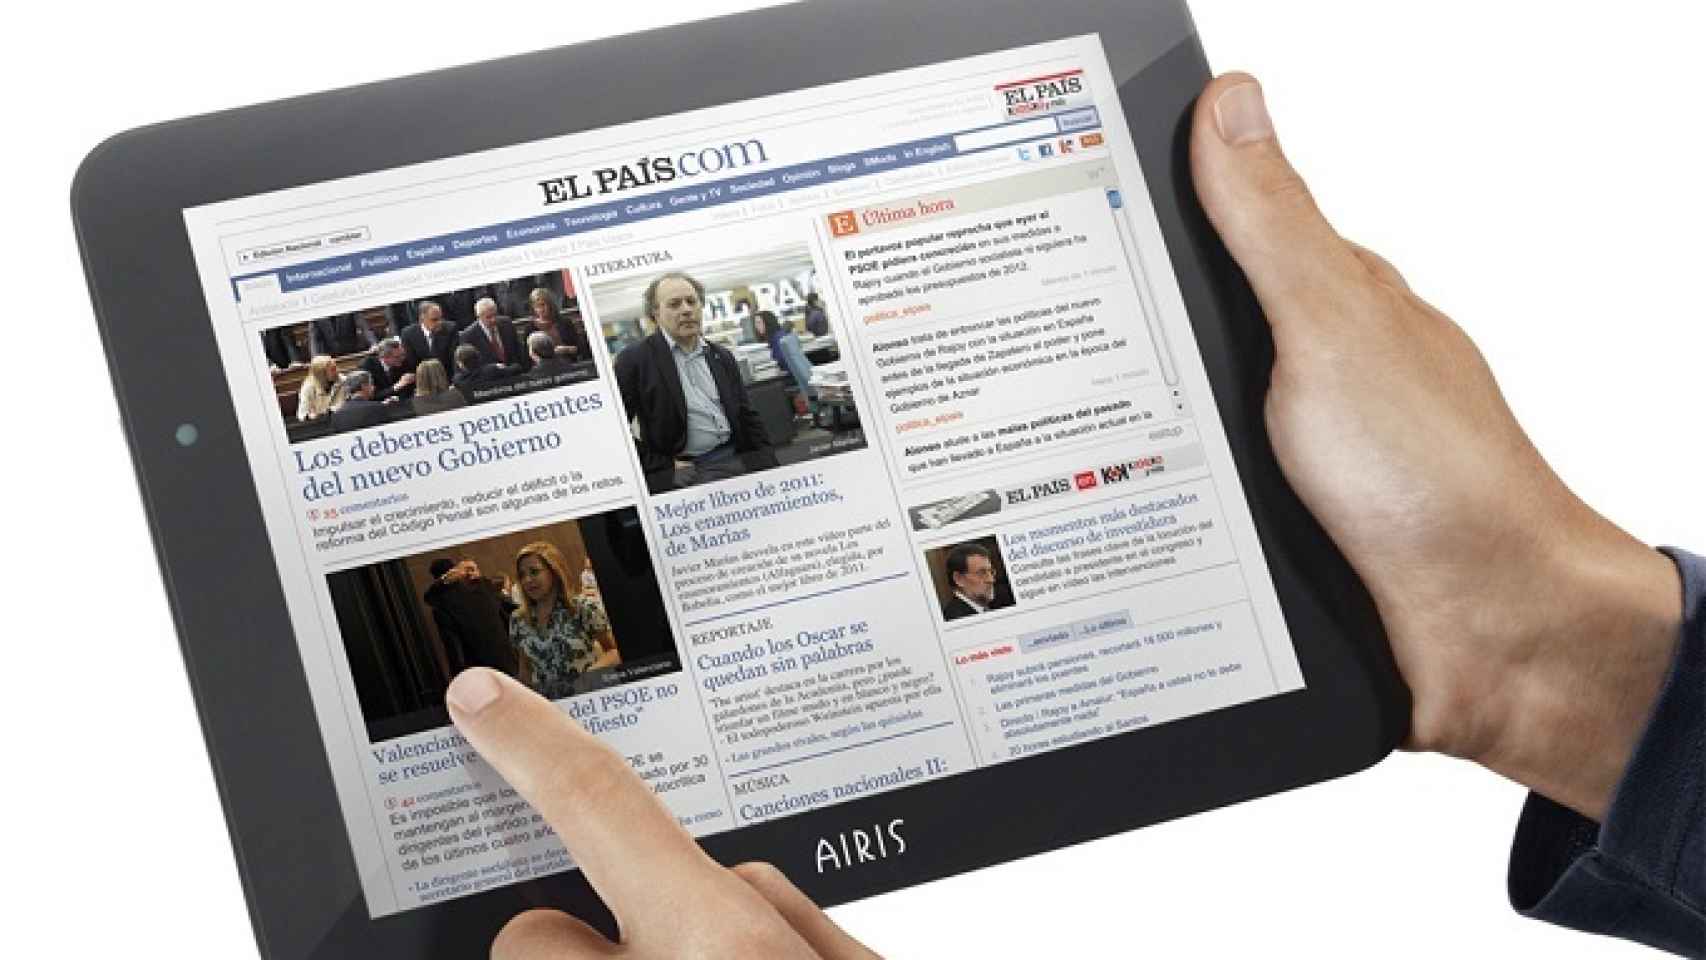 La tablet Android de Airis con «El País», ¿merece la pena?